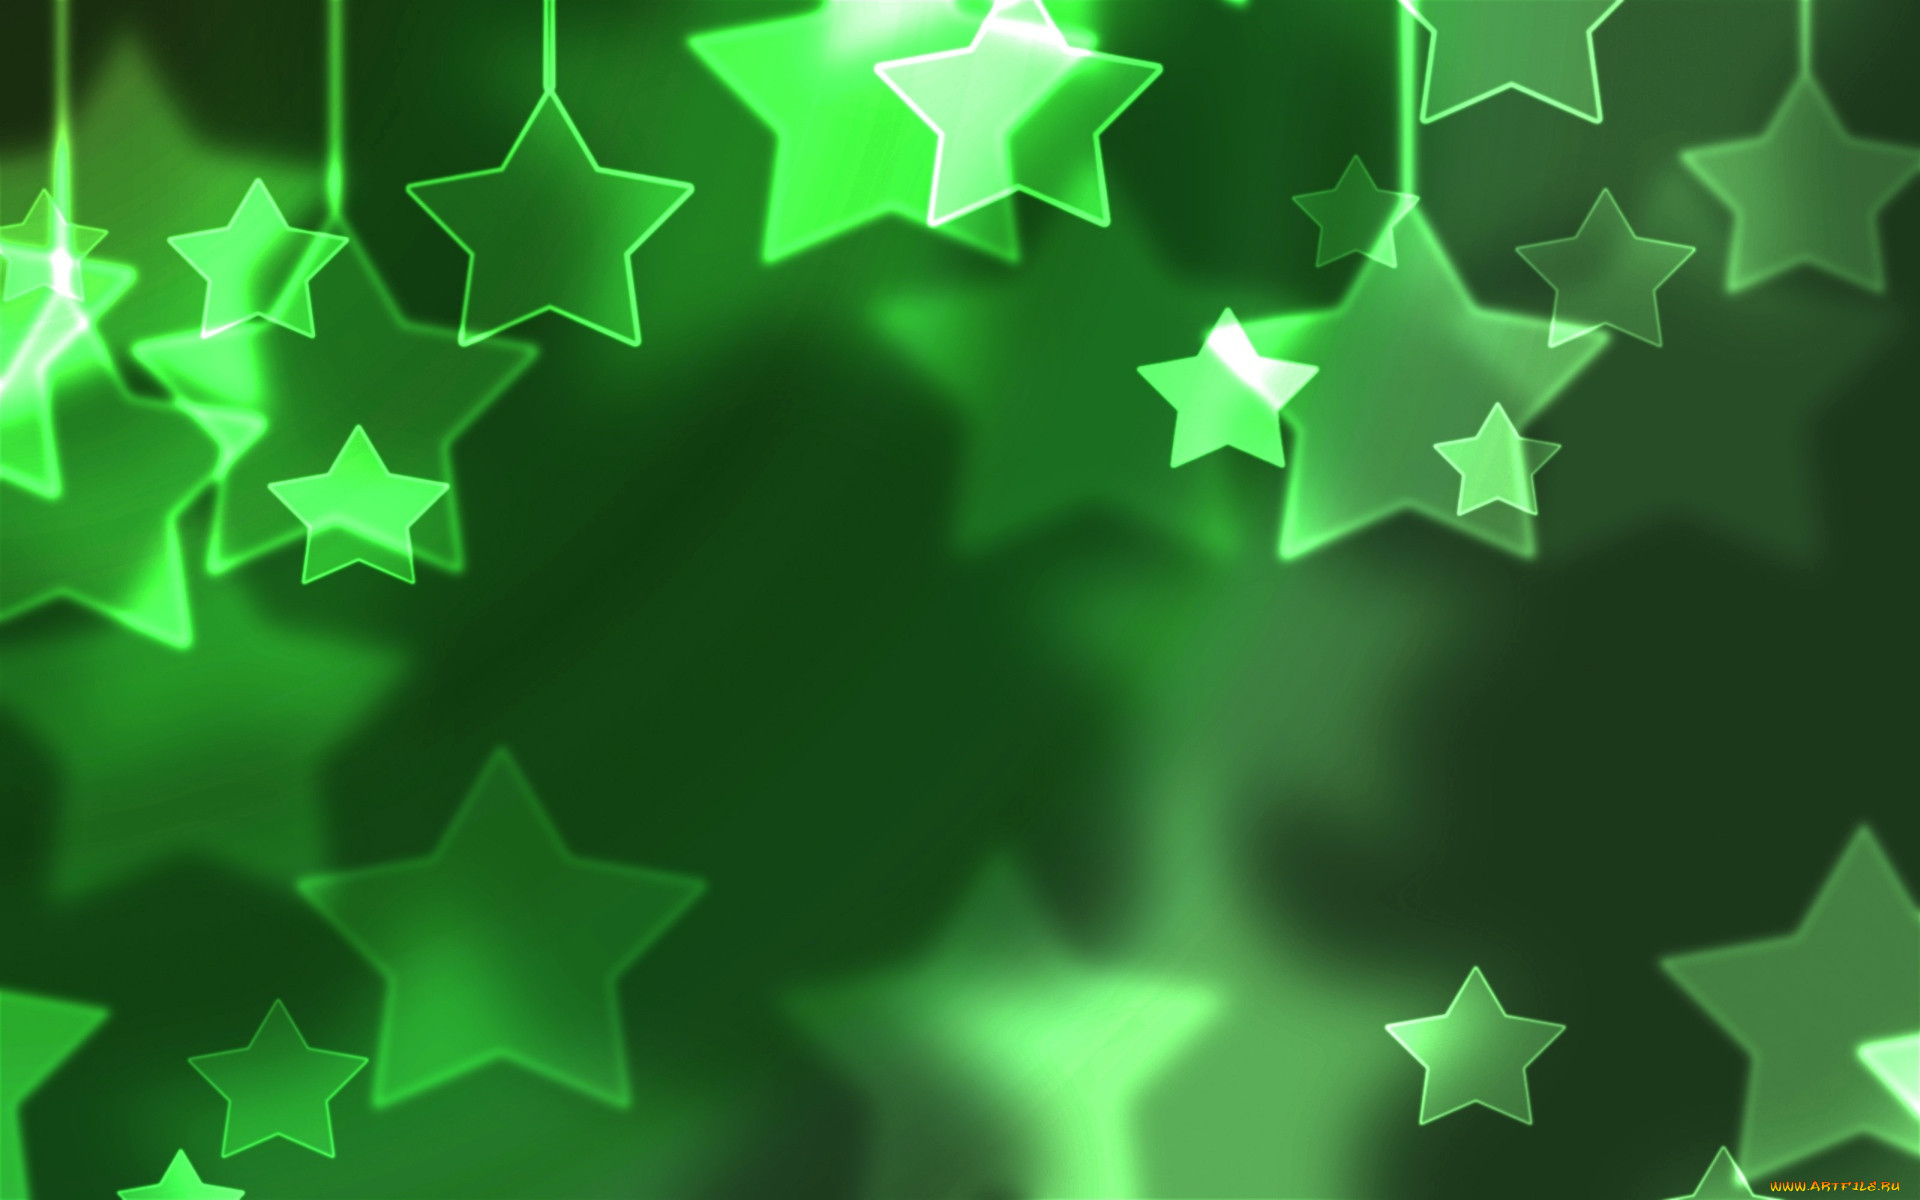 Обои Зеленые звезды Праздничные Векторная графика (Новый год), обои для  рабочего стола, фотографии зеленые, звезды, праздничные, векторная,  графика, новый, год Обои для рабочего стола, скачать обои картинки заставки  на рабочий стол.